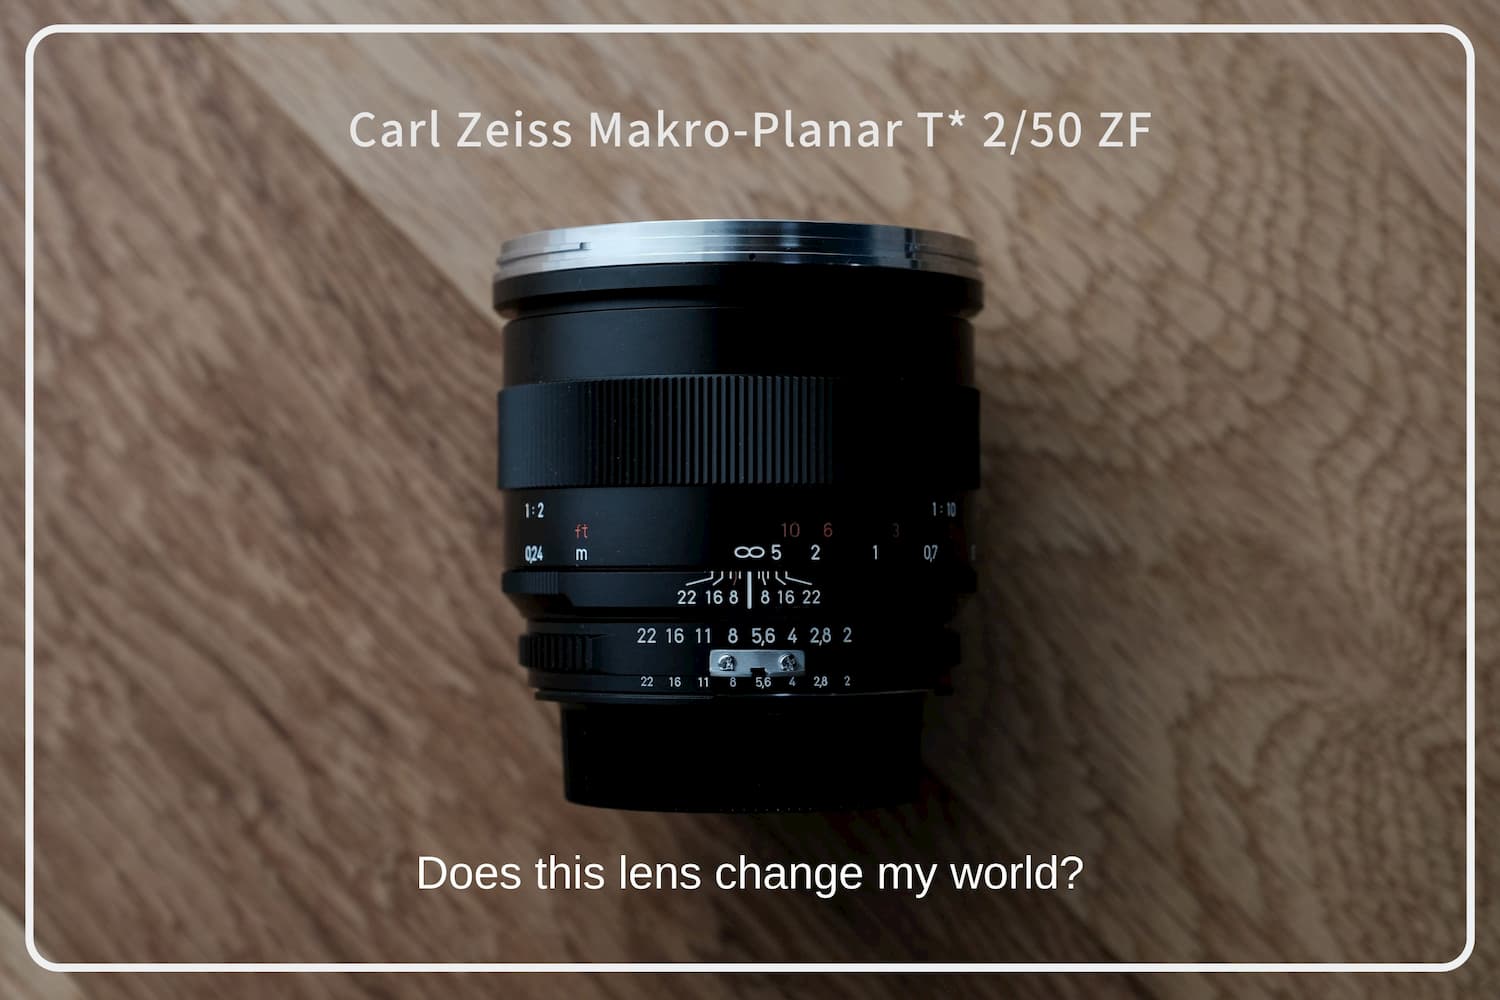 このレンズは、私の世界を変えるのか。Carl Zeiss Makro-Planar T* 2 